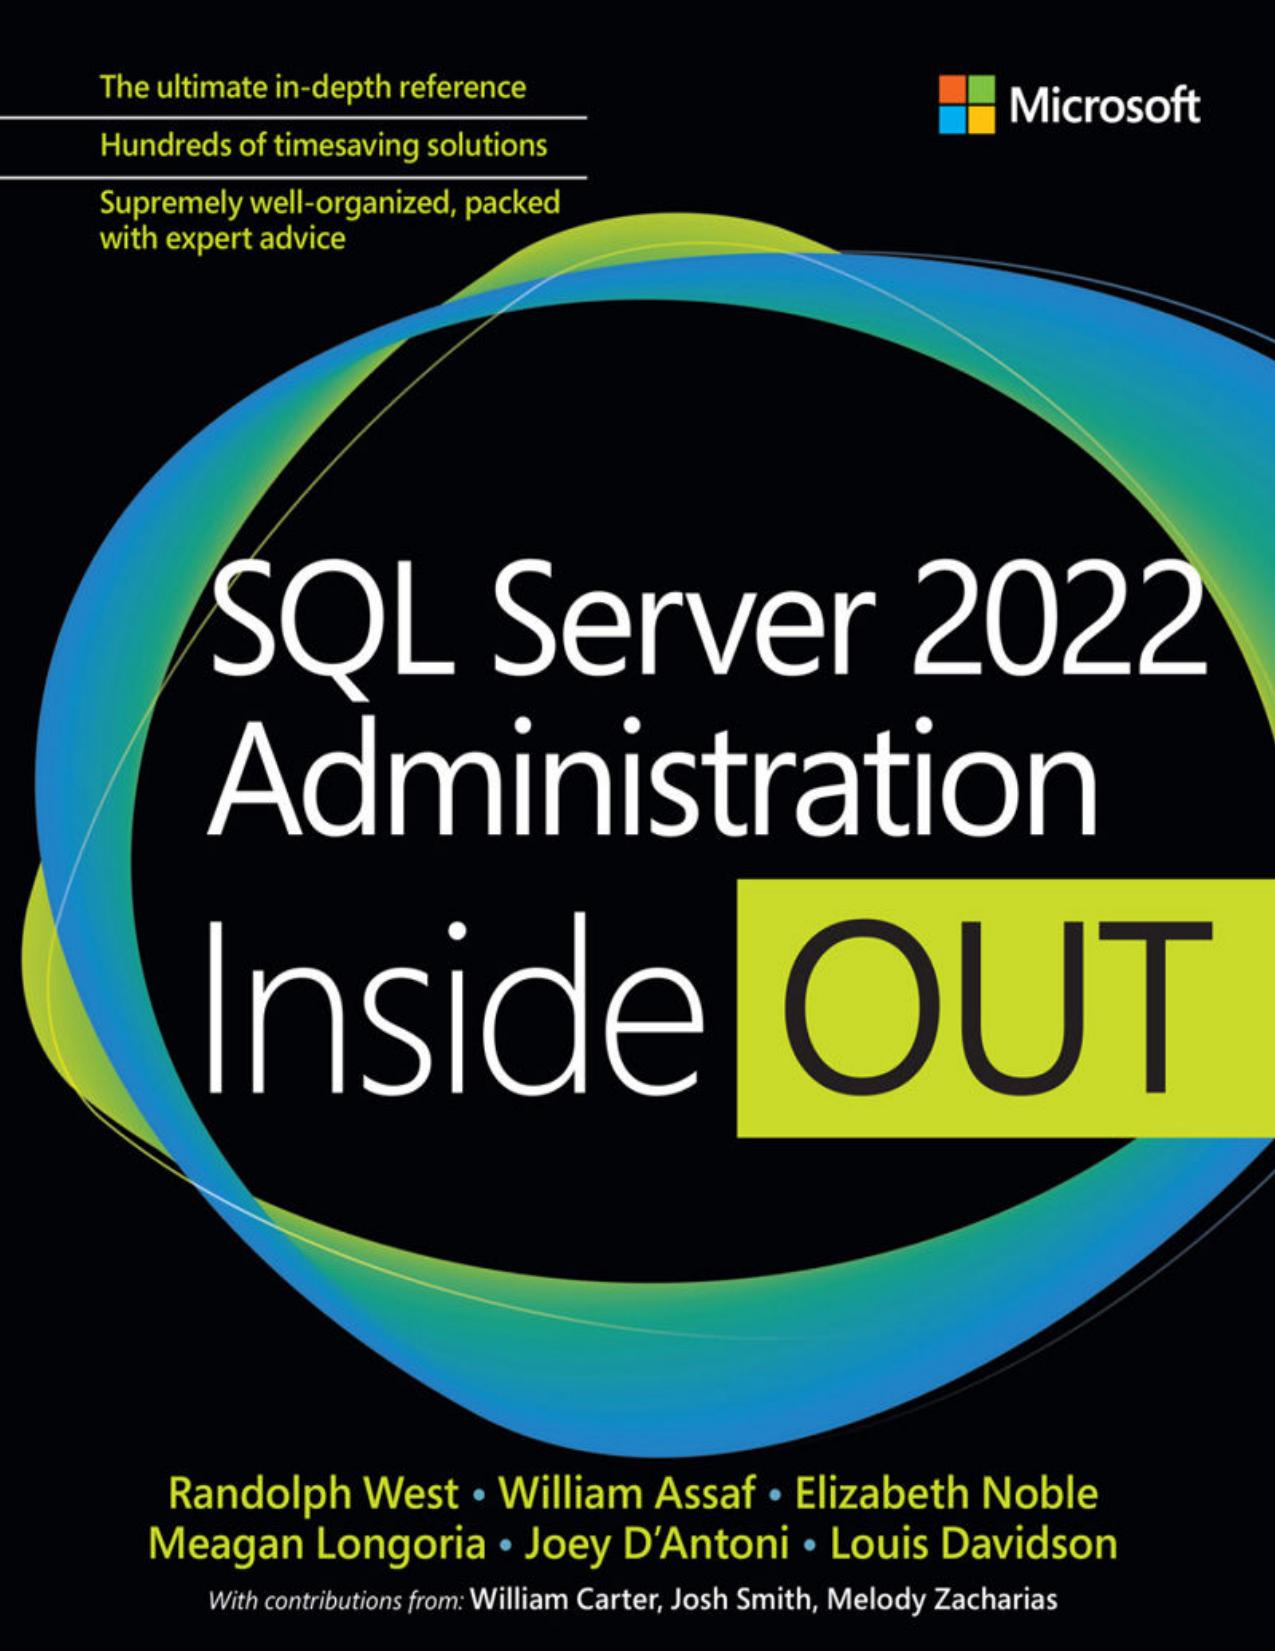 SQL Server 2022 Administration Inside Out by Randolph West; William Assaf; Elizabeth Noble; Meagan Longoria; Joseph D'Antoni; Louis Davidson